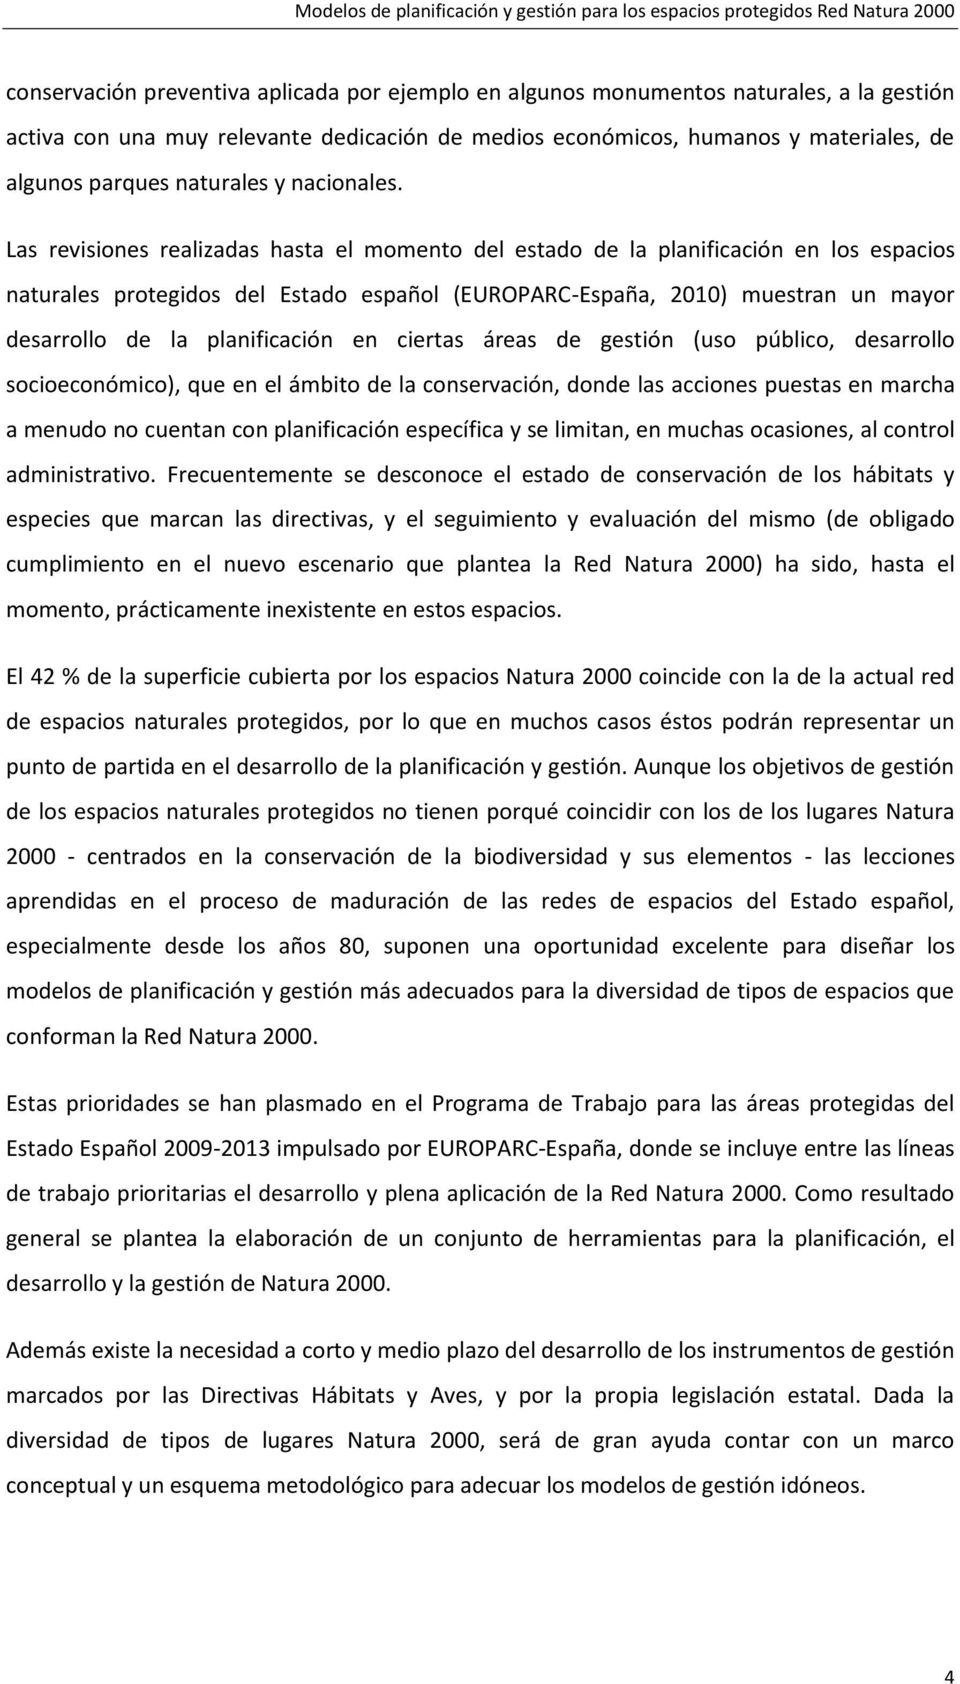 Las revisiones realizadas hasta el momento del estado de la planificación en los espacios naturales protegidos del Estado español (EUROPARC-España, 2010) muestran un mayor desarrollo de la